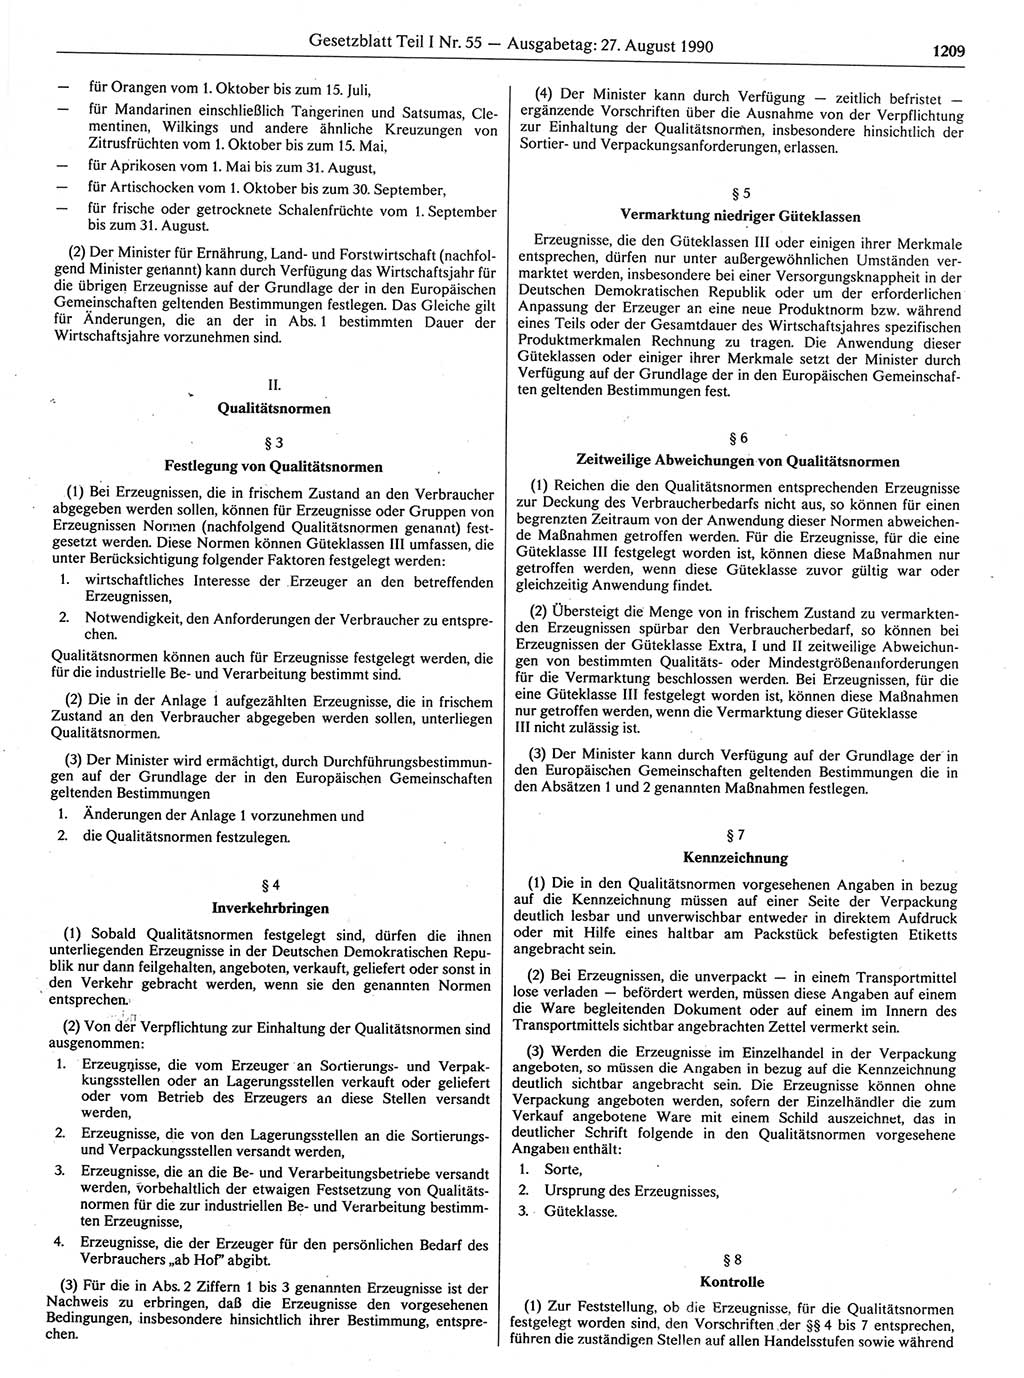 Gesetzblatt (GBl.) der Deutschen Demokratischen Republik (DDR) Teil Ⅰ 1990, Seite 1209 (GBl. DDR Ⅰ 1990, S. 1209)